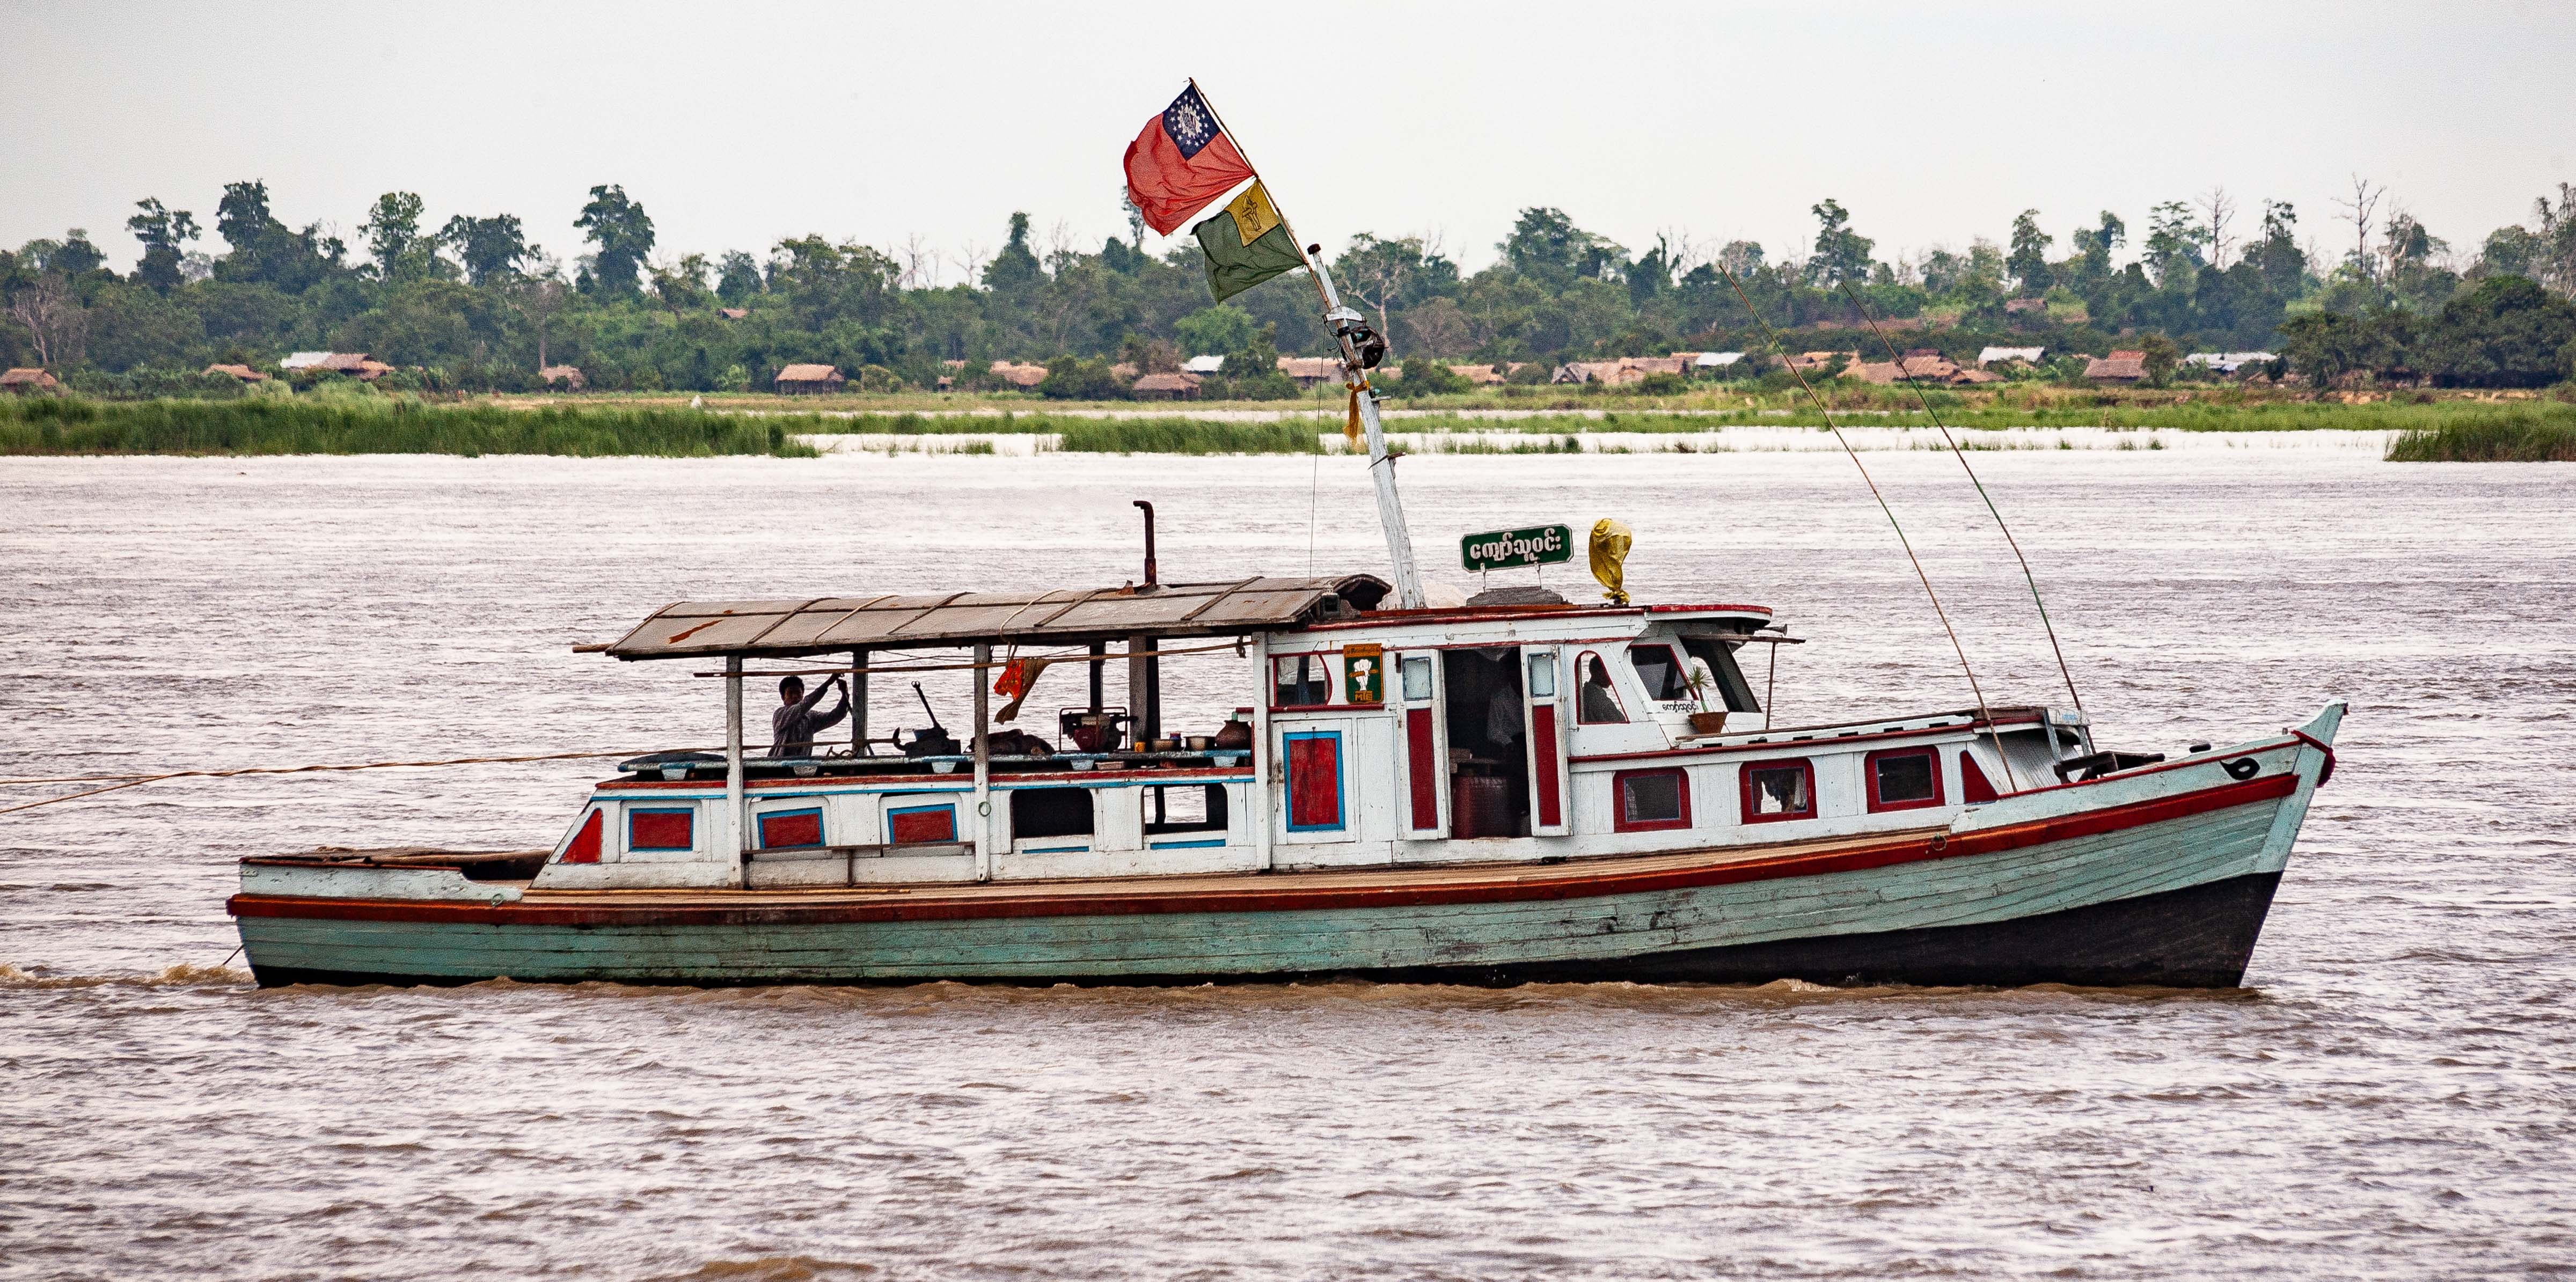 Myanmar, Unknown Prov, Boat Scene, 2009, IMG 3749